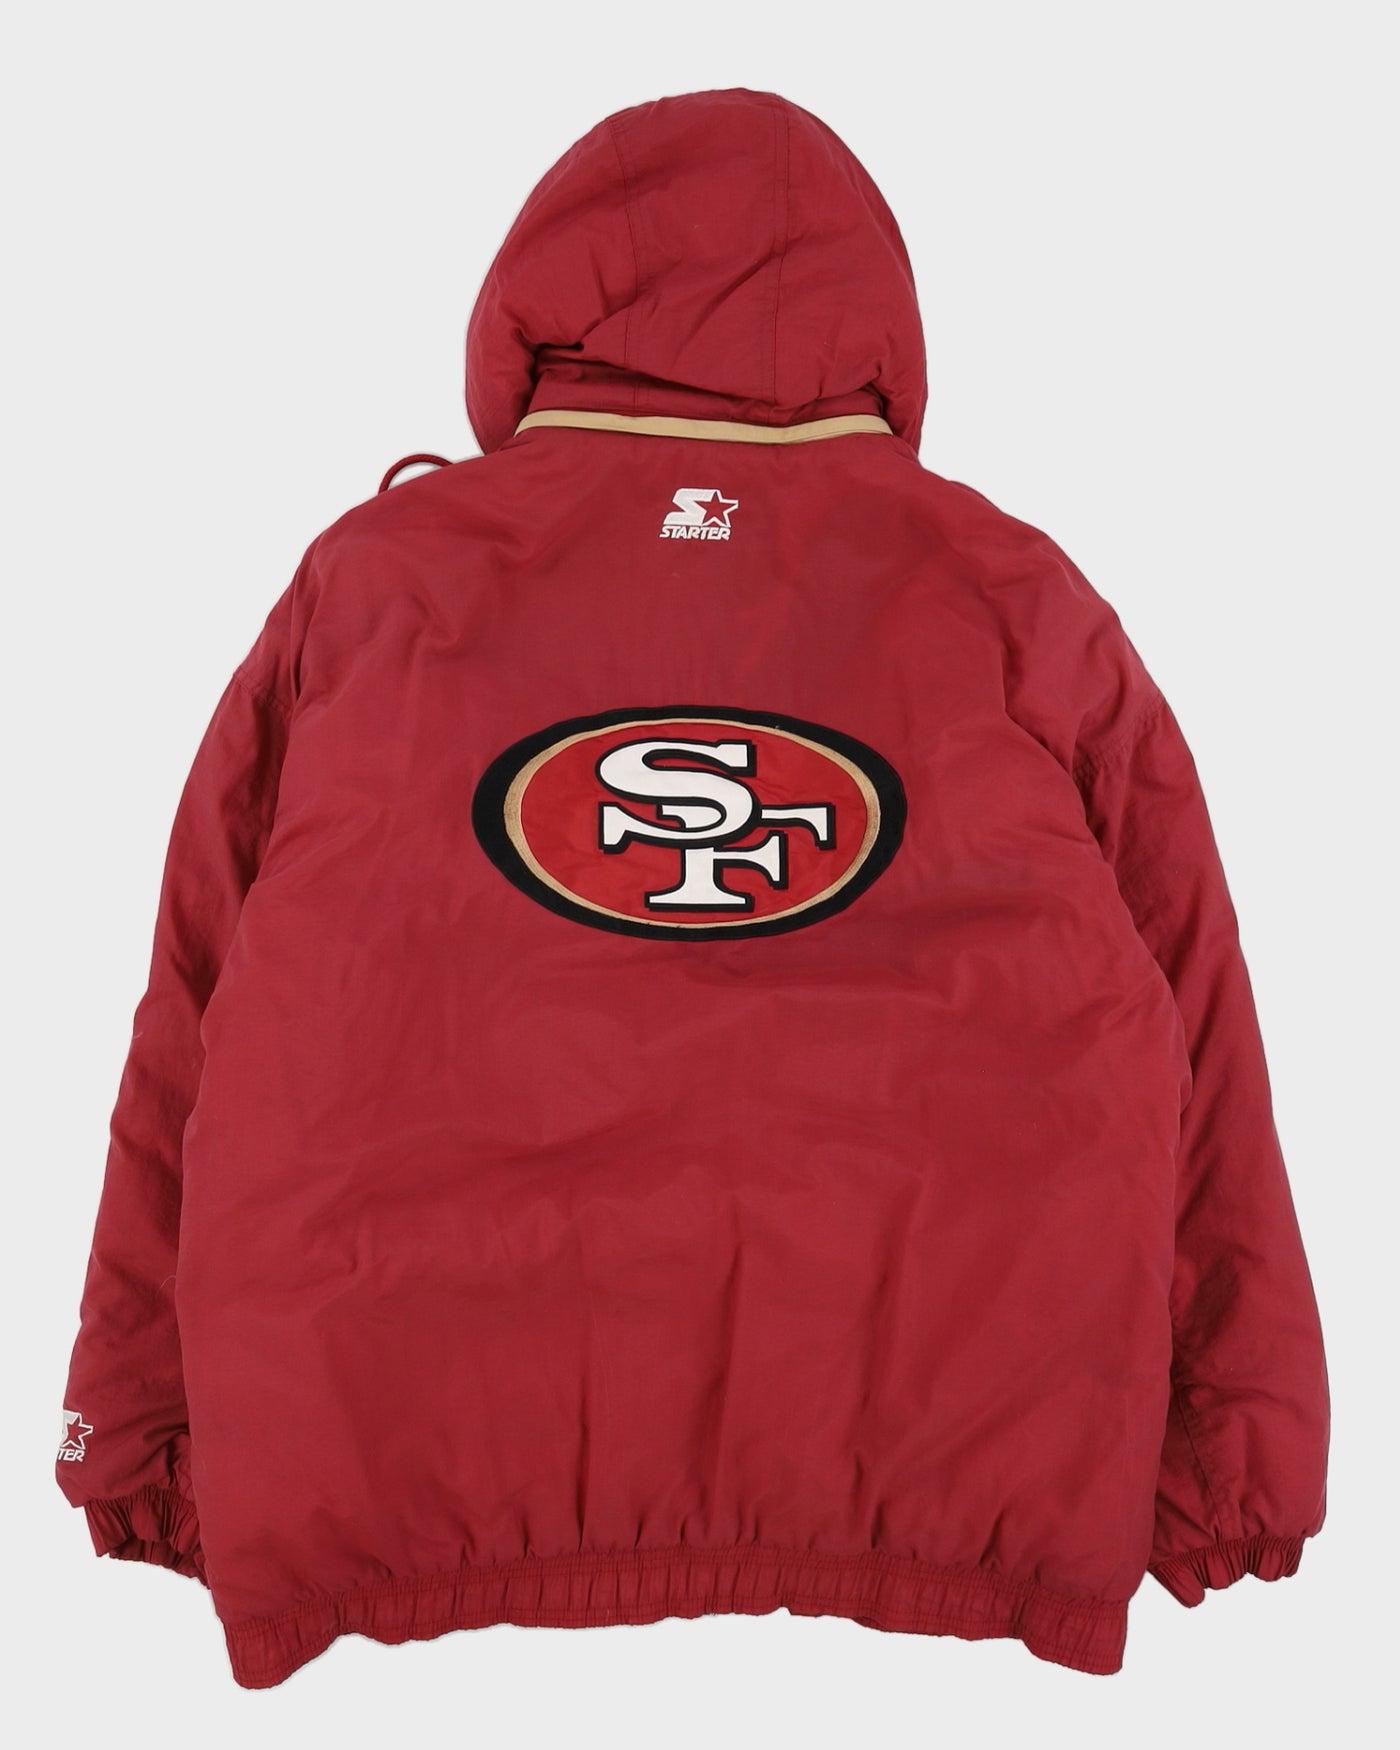 00s Y2K Starter NFL San Francisco 49ERS Red Jacket - XL